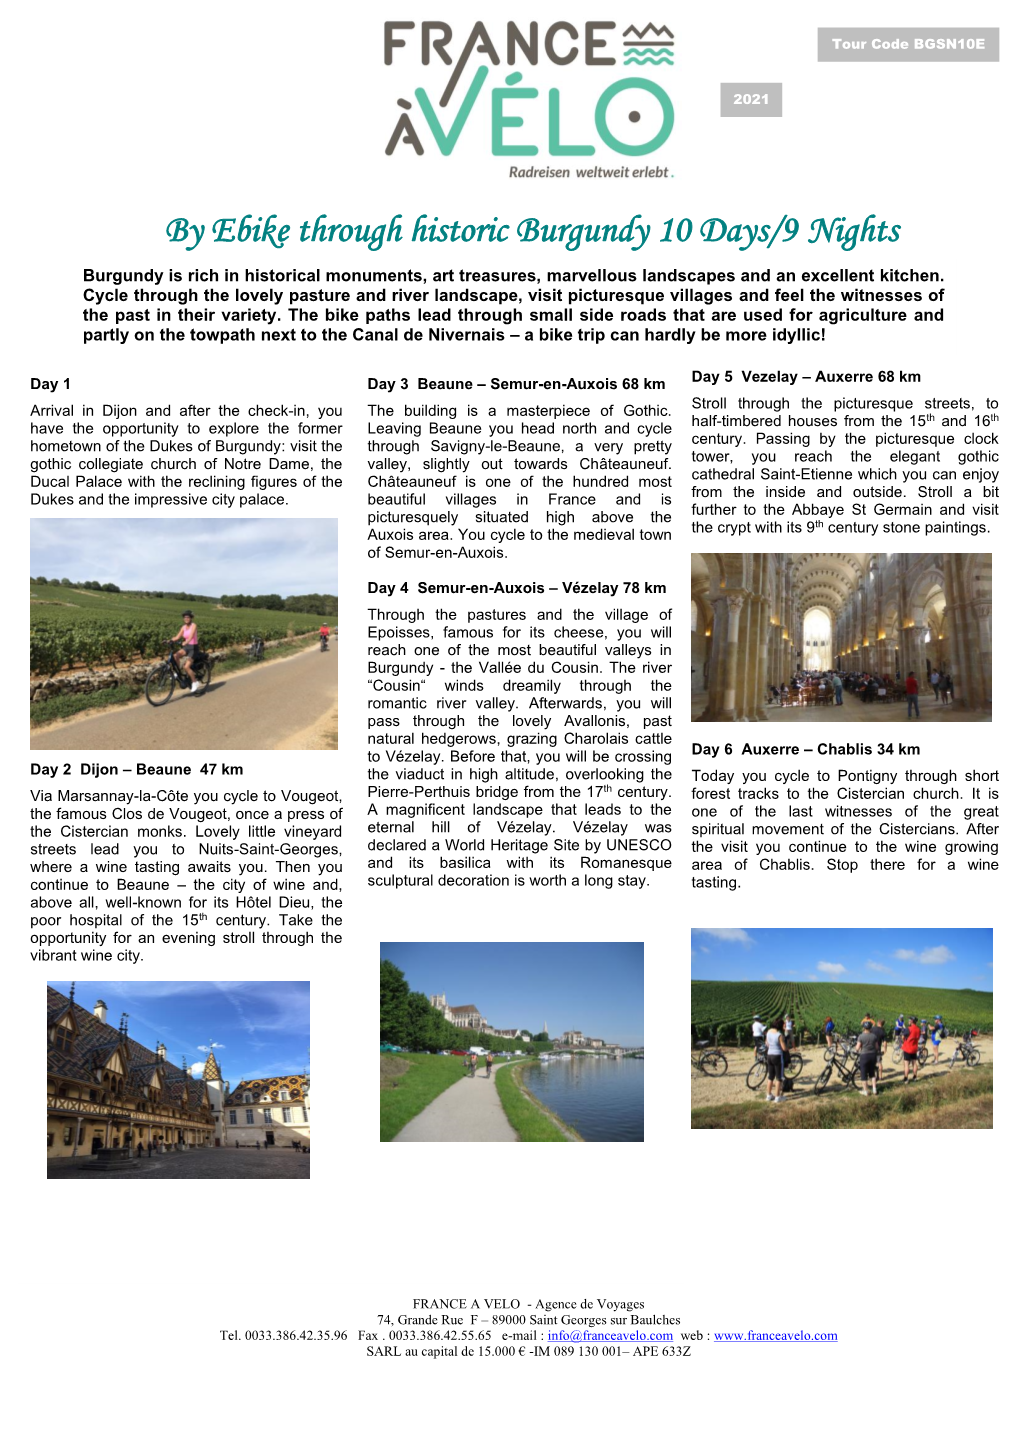 By Ebike Through Historic Burgundy 10 Days/9 Nights Nächtenächte